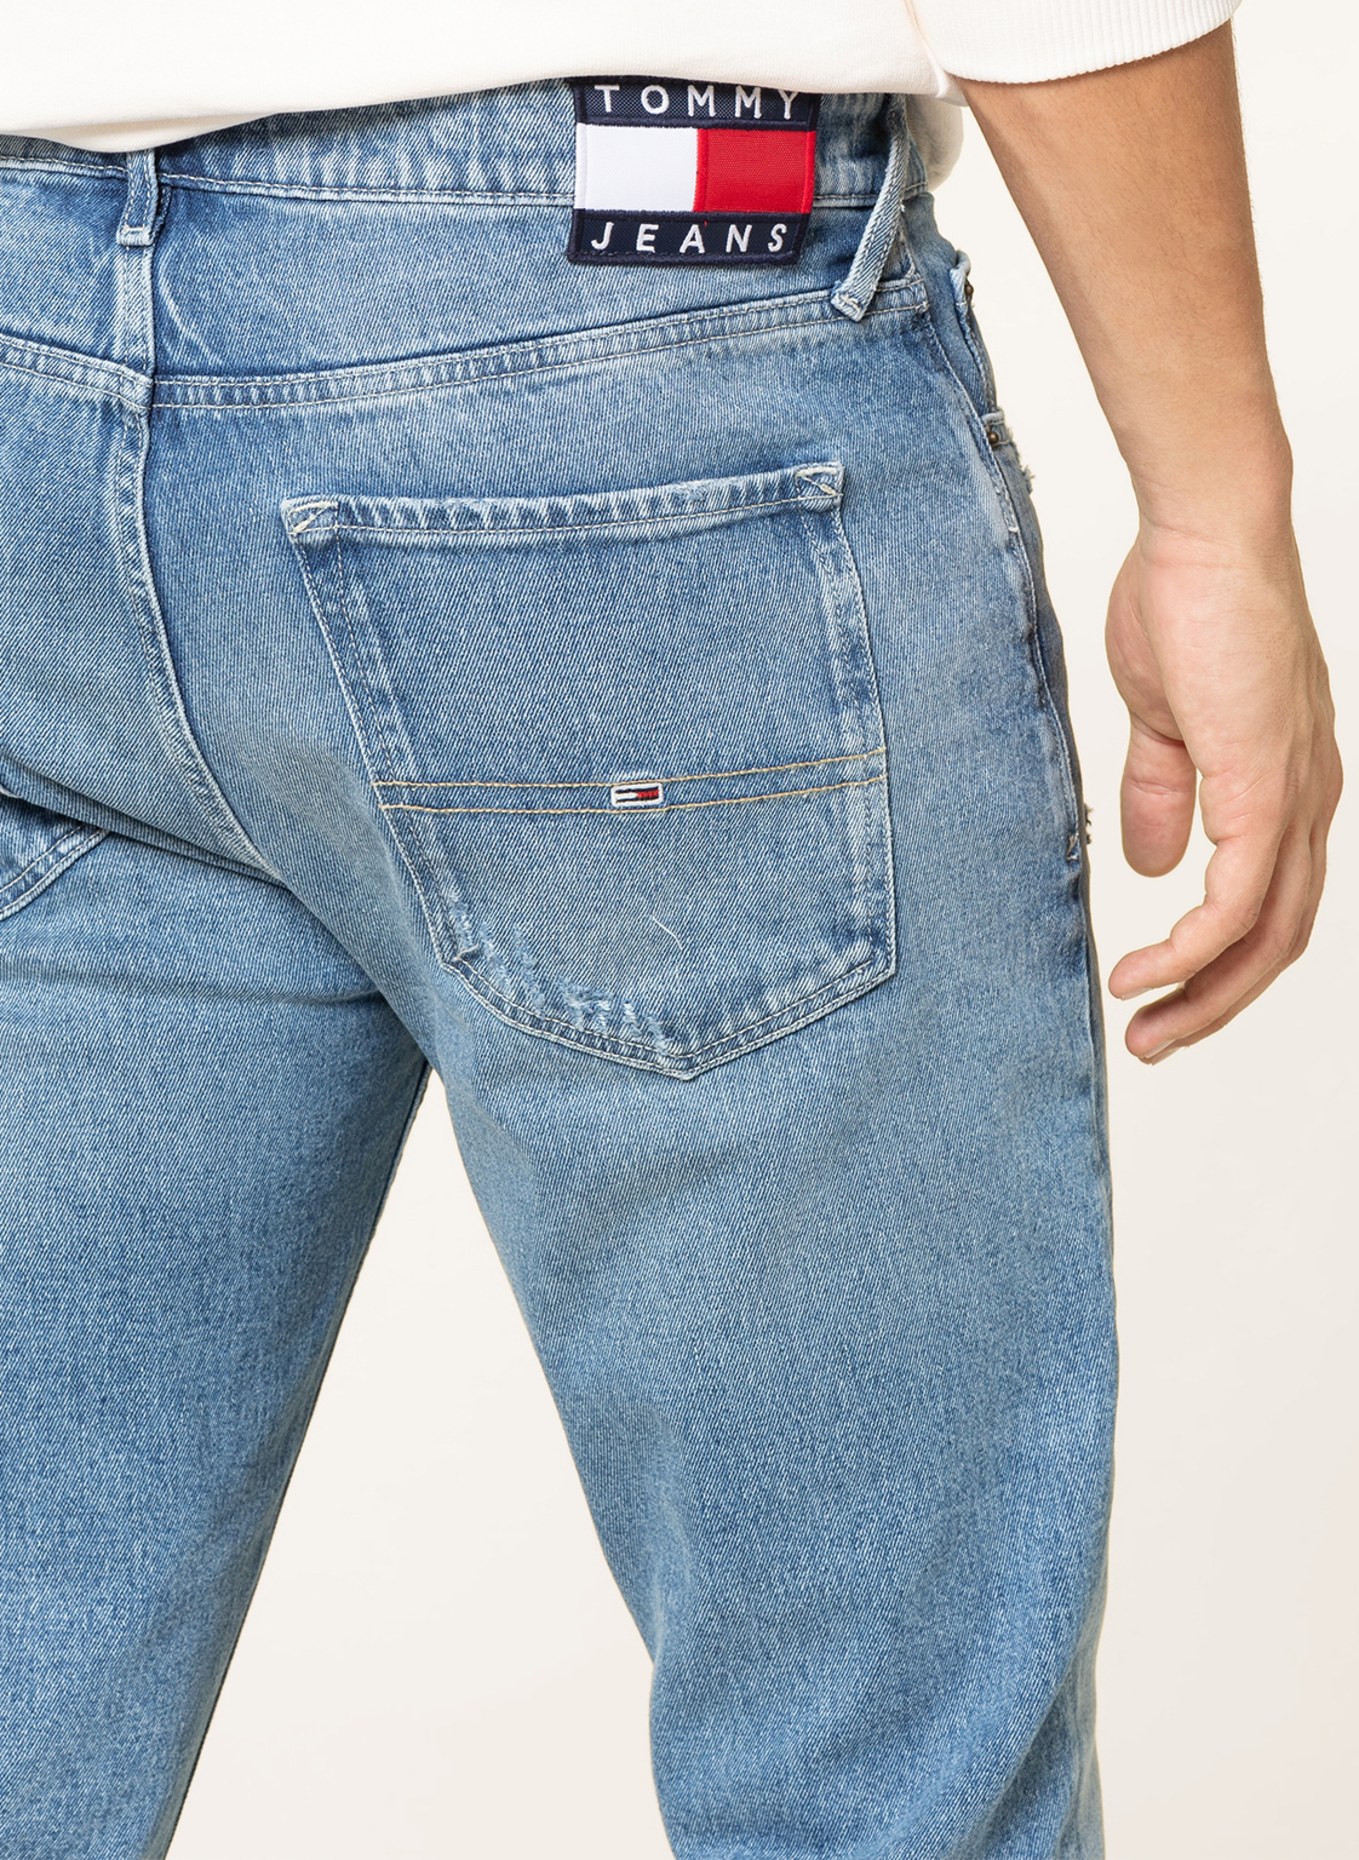 TOMMY JEANS Destroyed jeans SCANTON slim fit, Color: 1A5 Denim Light (Image 5)